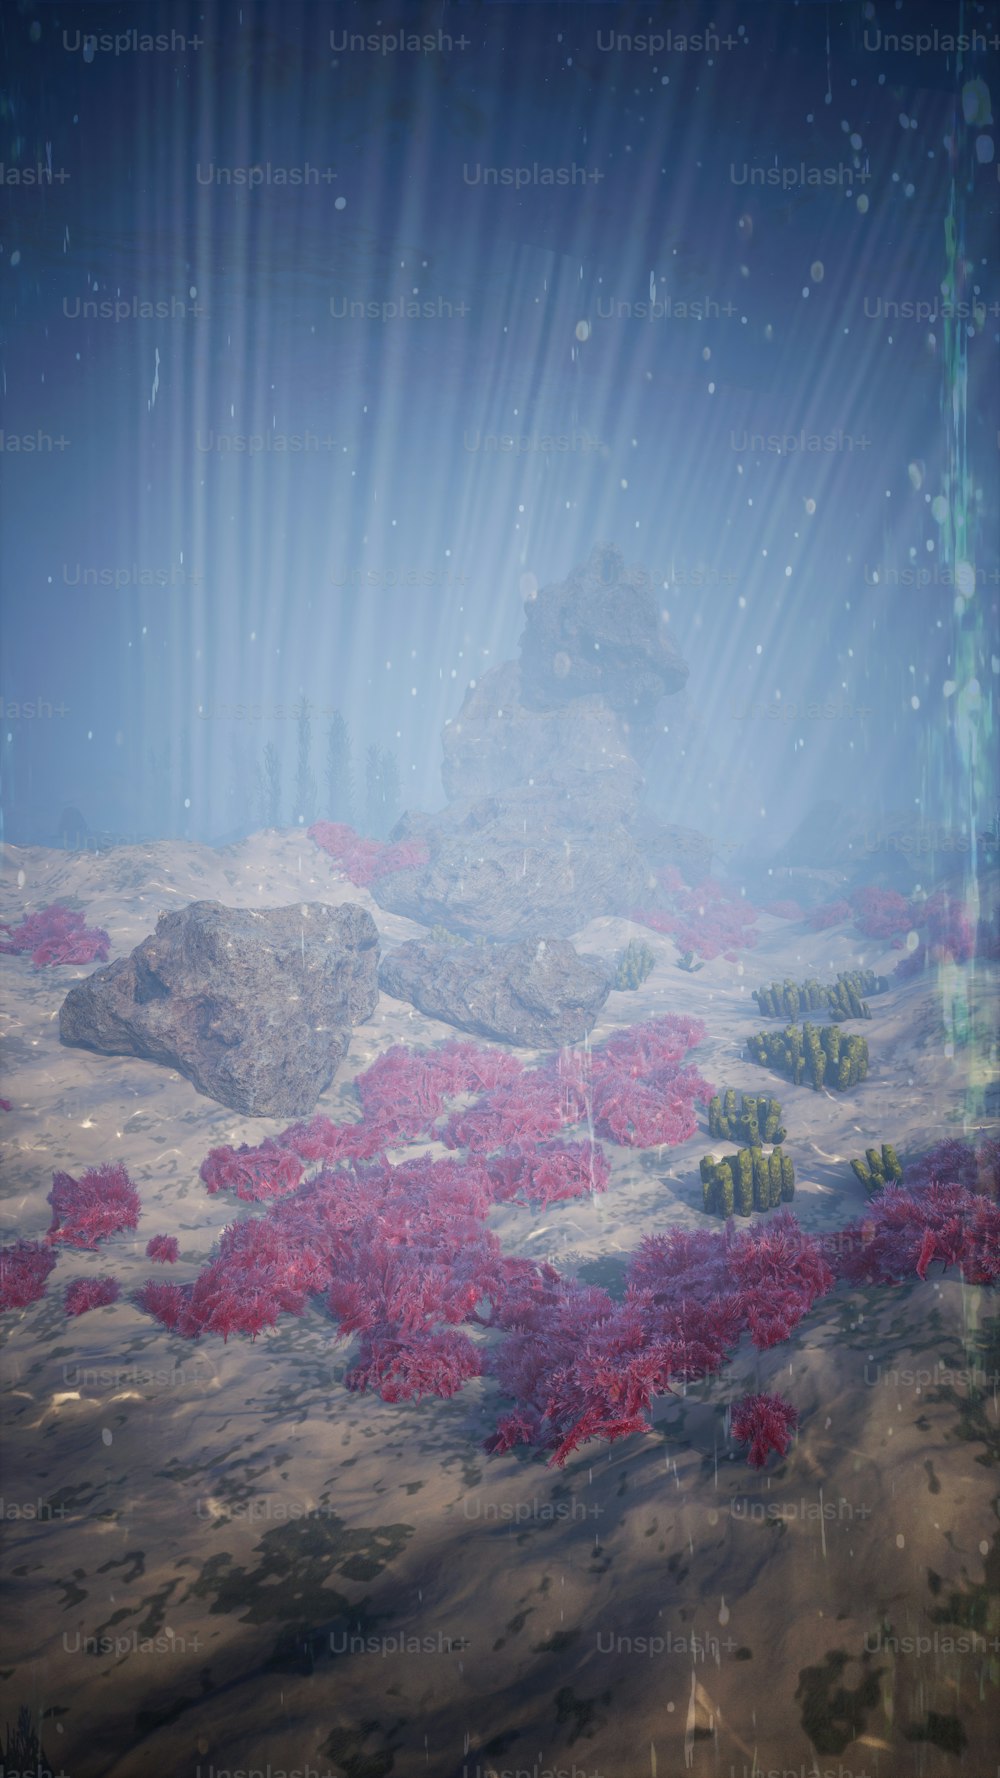 Une scène sous-marine avec des plantes et des roches rouges